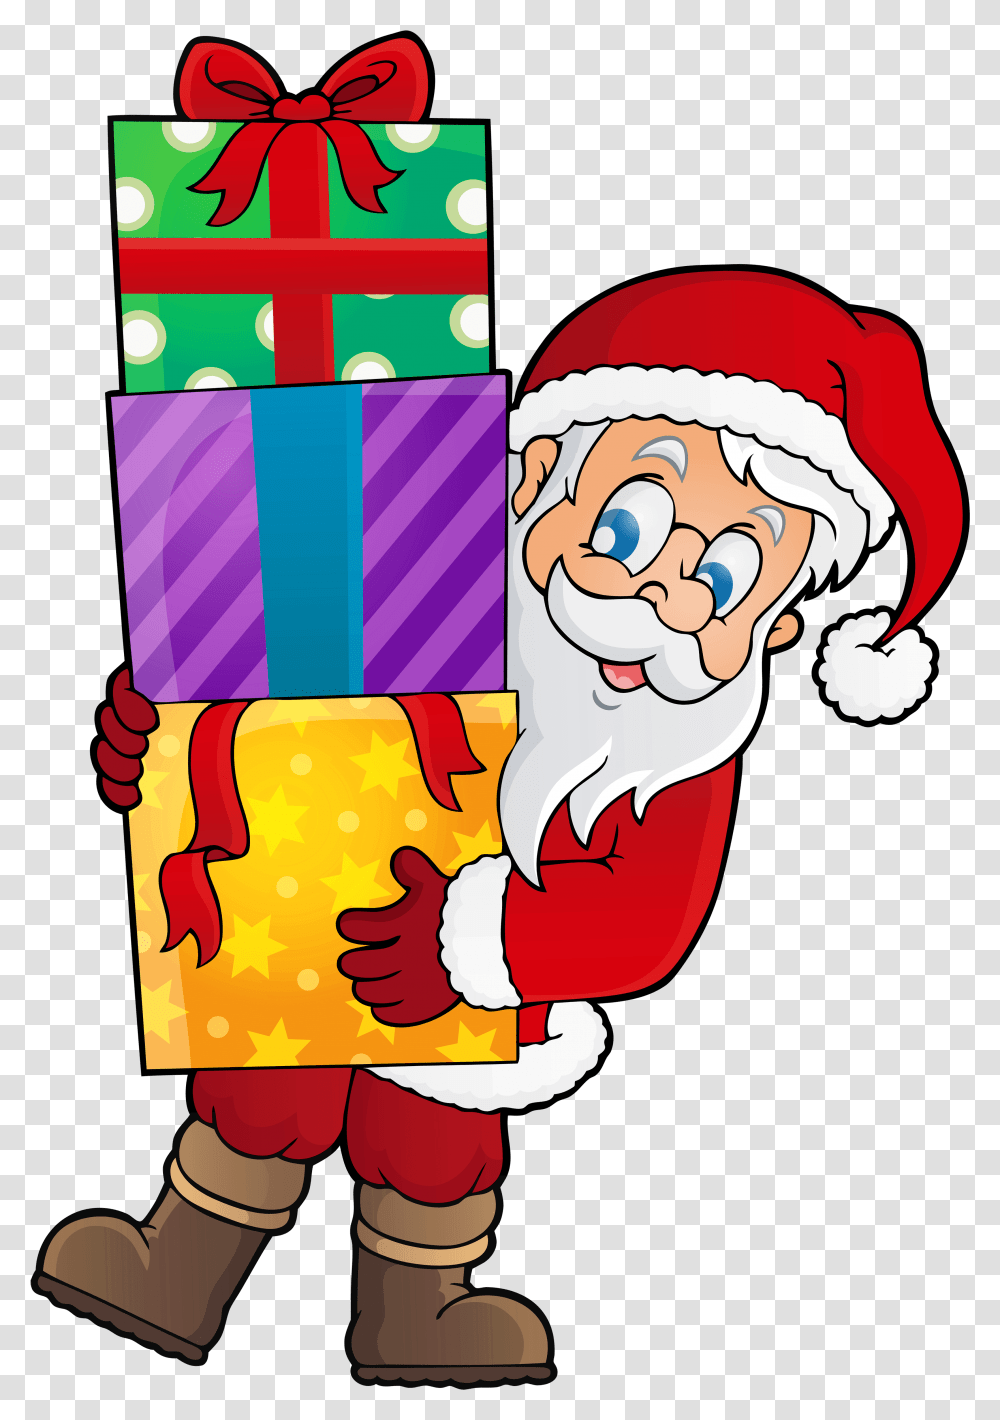 Santa With Presents Clipart Clip Art Santa And Presents, Hand, Elf, Poster, Advertisement Transparent Png